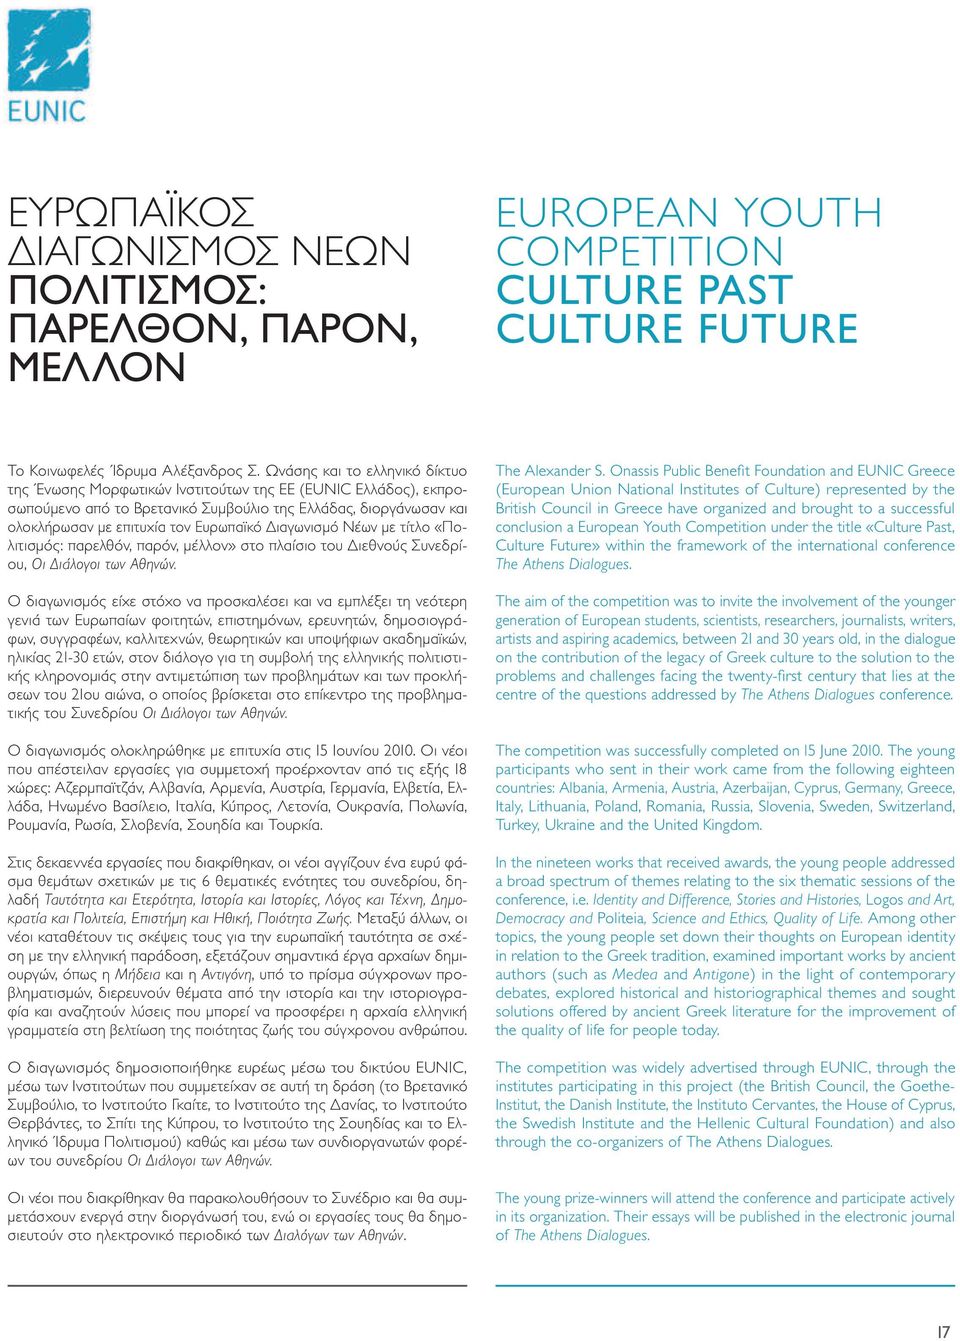 Διαγωνισμό Νέων με τίτλο «Πολιτισμός: παρελθόν, παρόν, μέλλον» στο πλαίσιο του Διεθνούς Συνεδρίου, Οι Διάλογοι των Αθηνών.